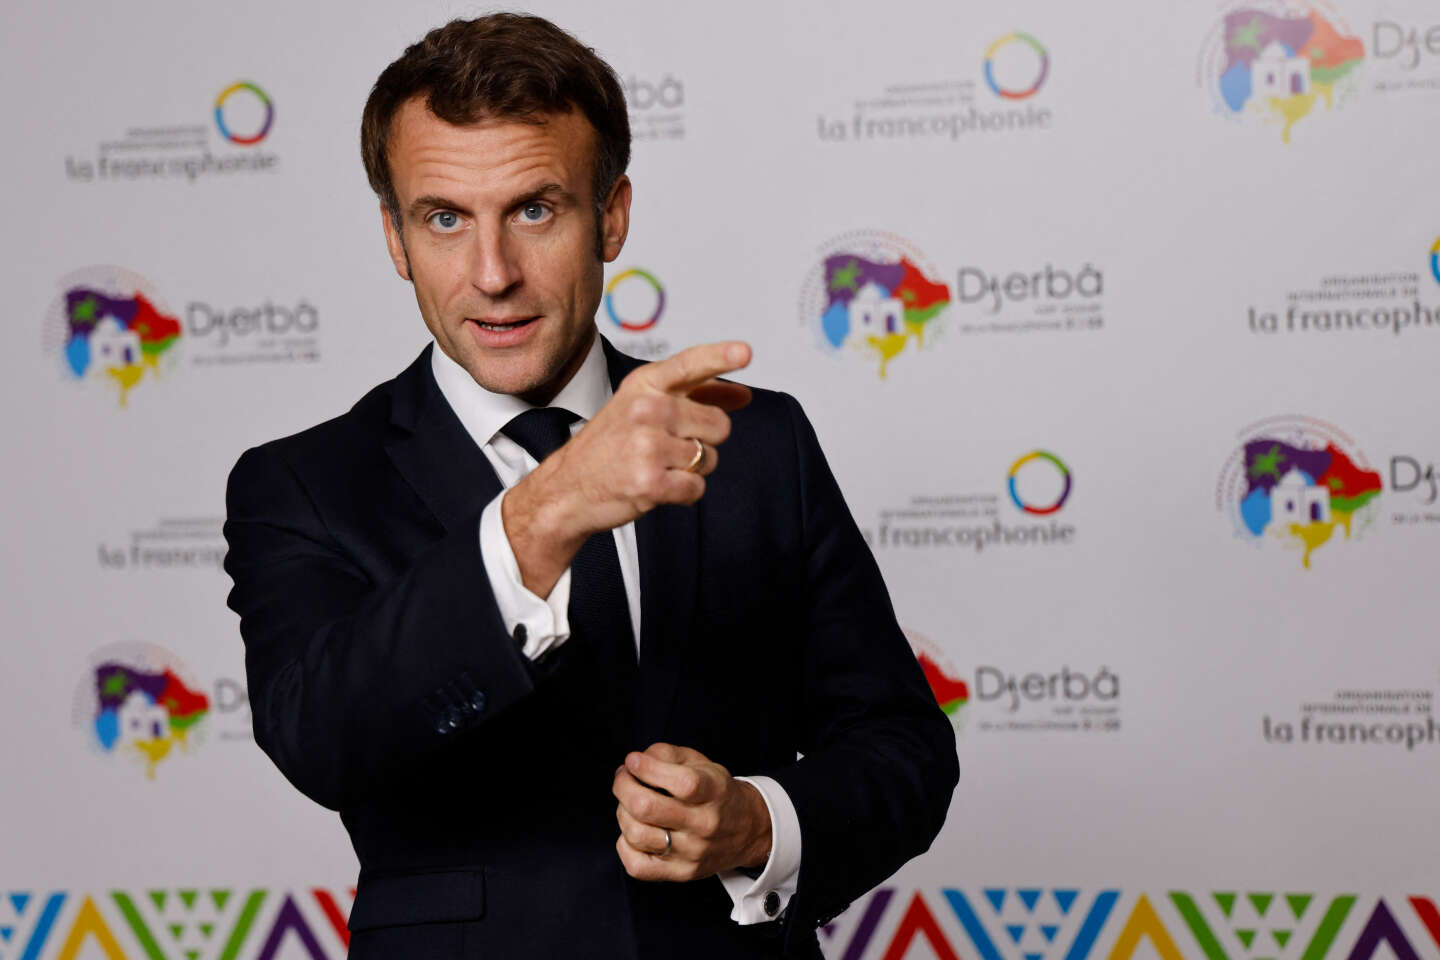 Le président Macron accuse la Russie d’un « projet de prédation » en Afrique